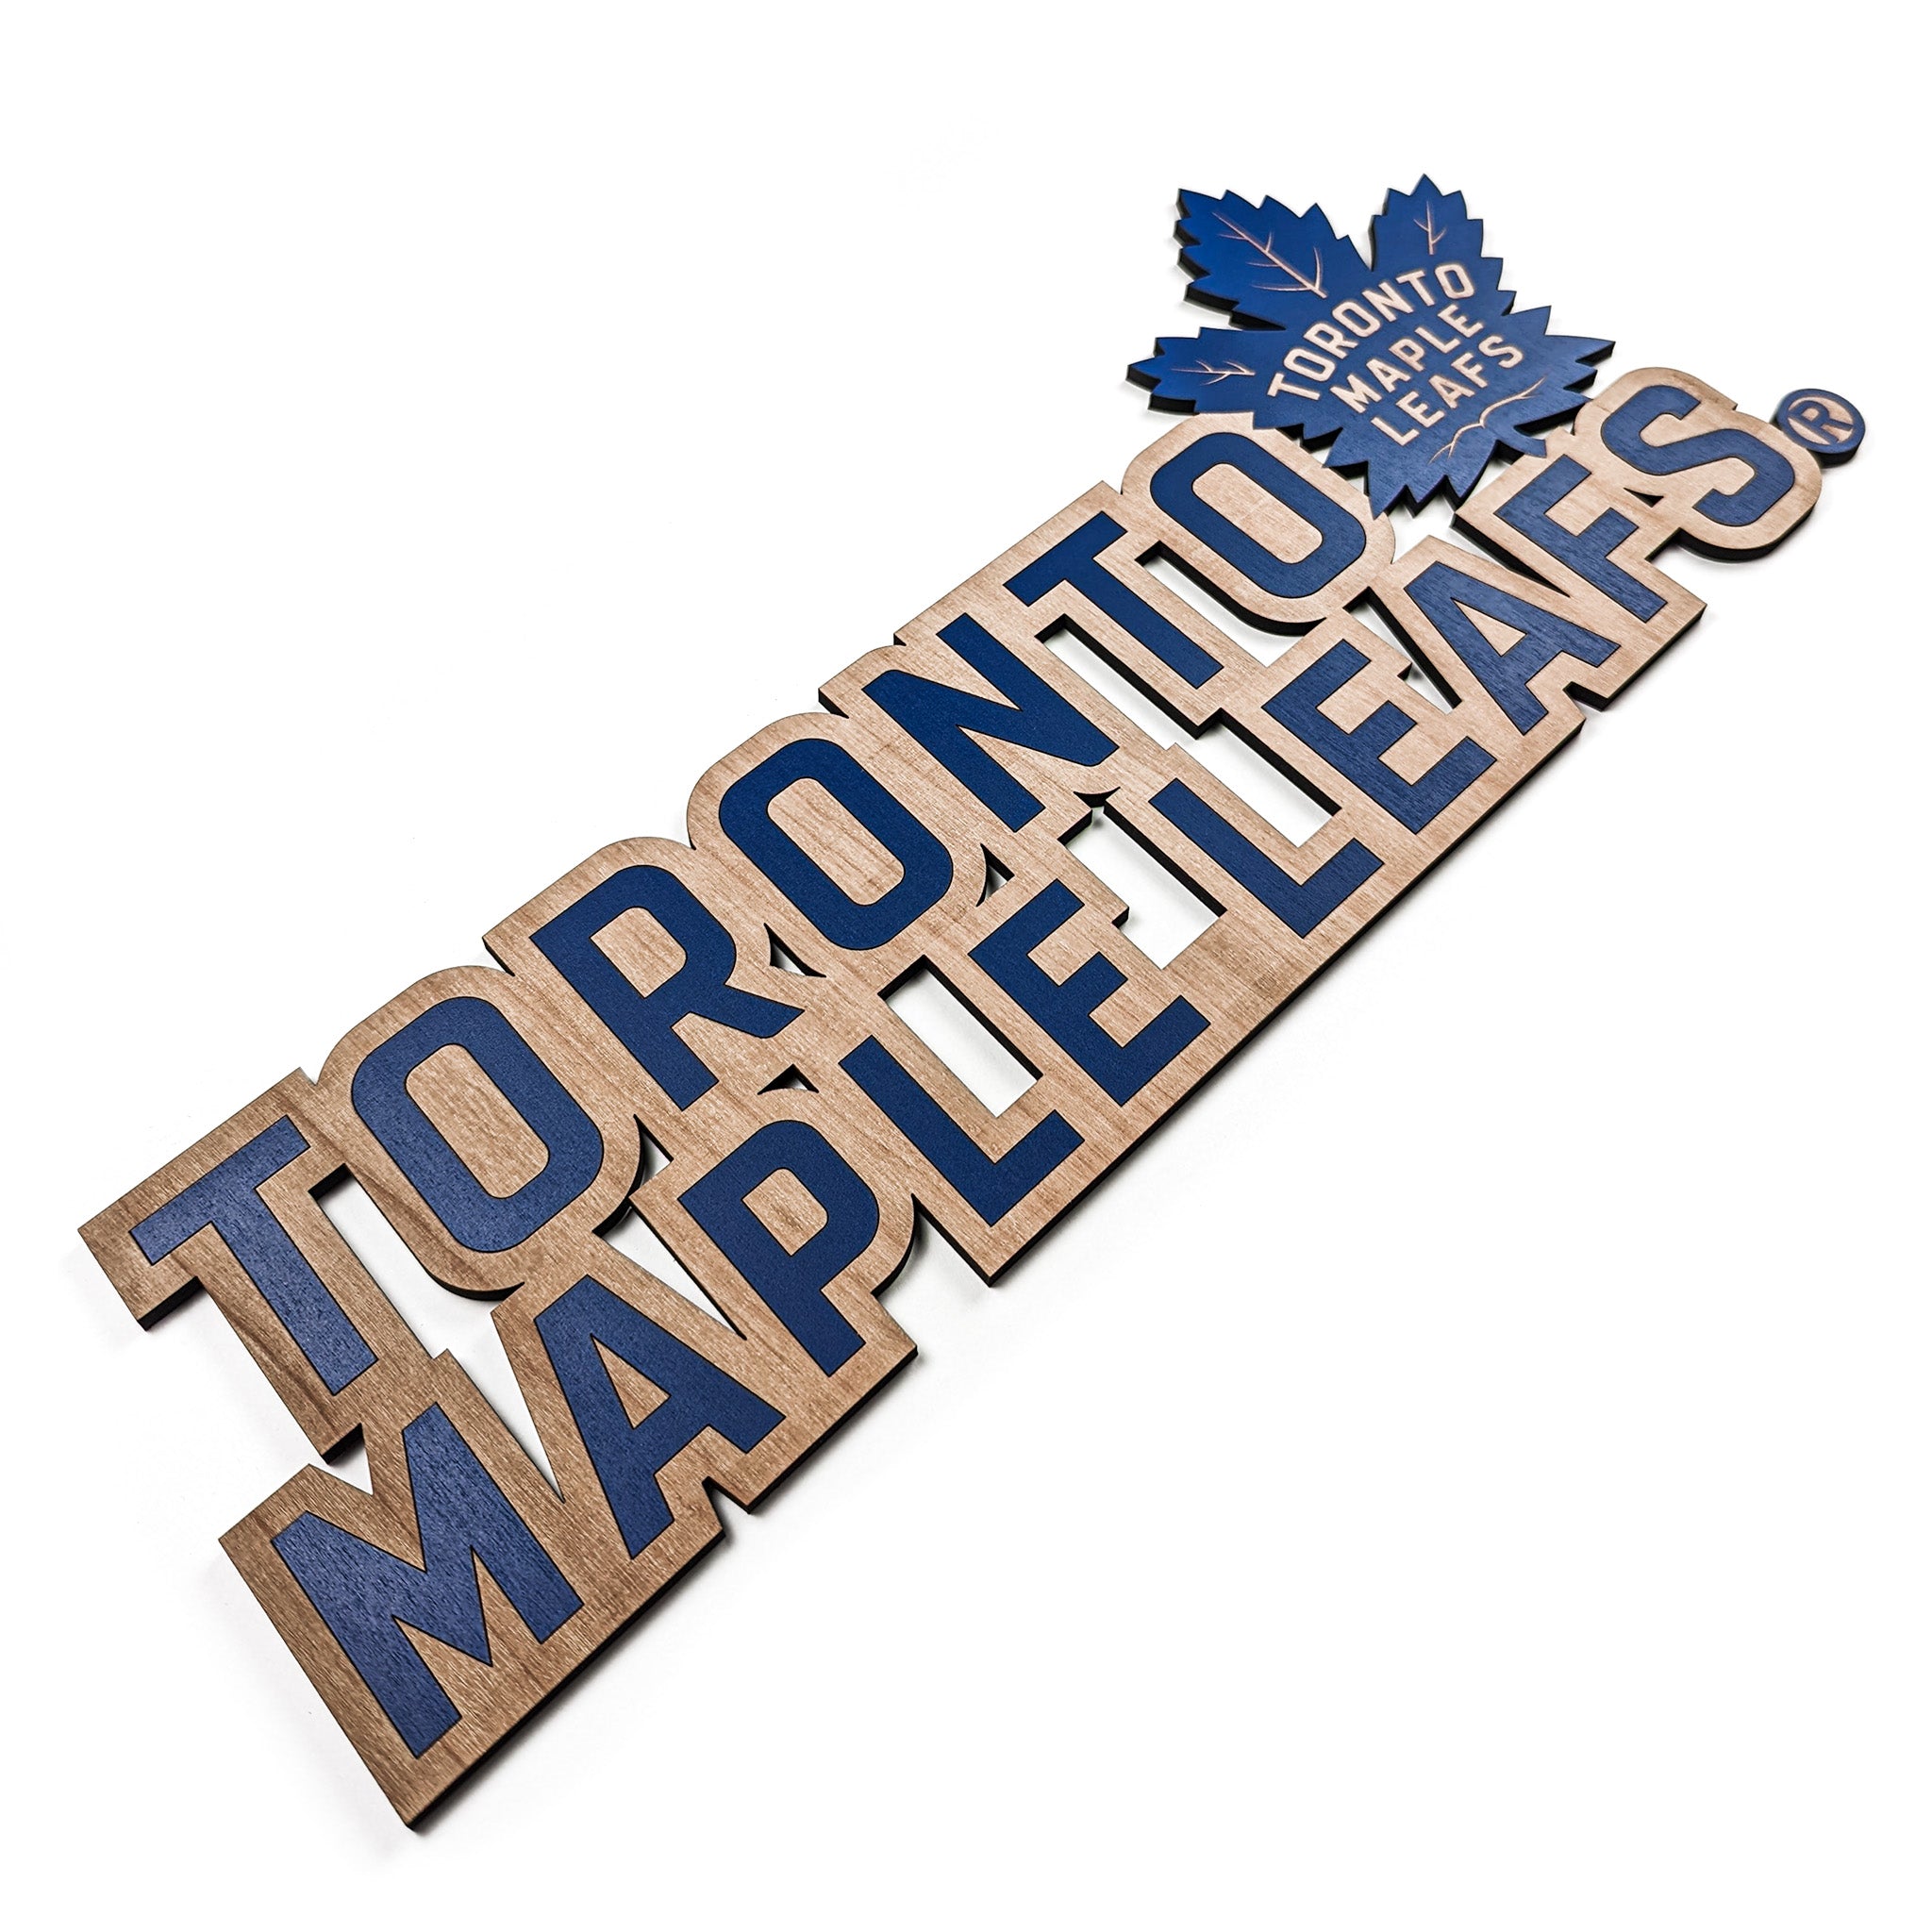 Toronto Maple Leafs Team Wordmark